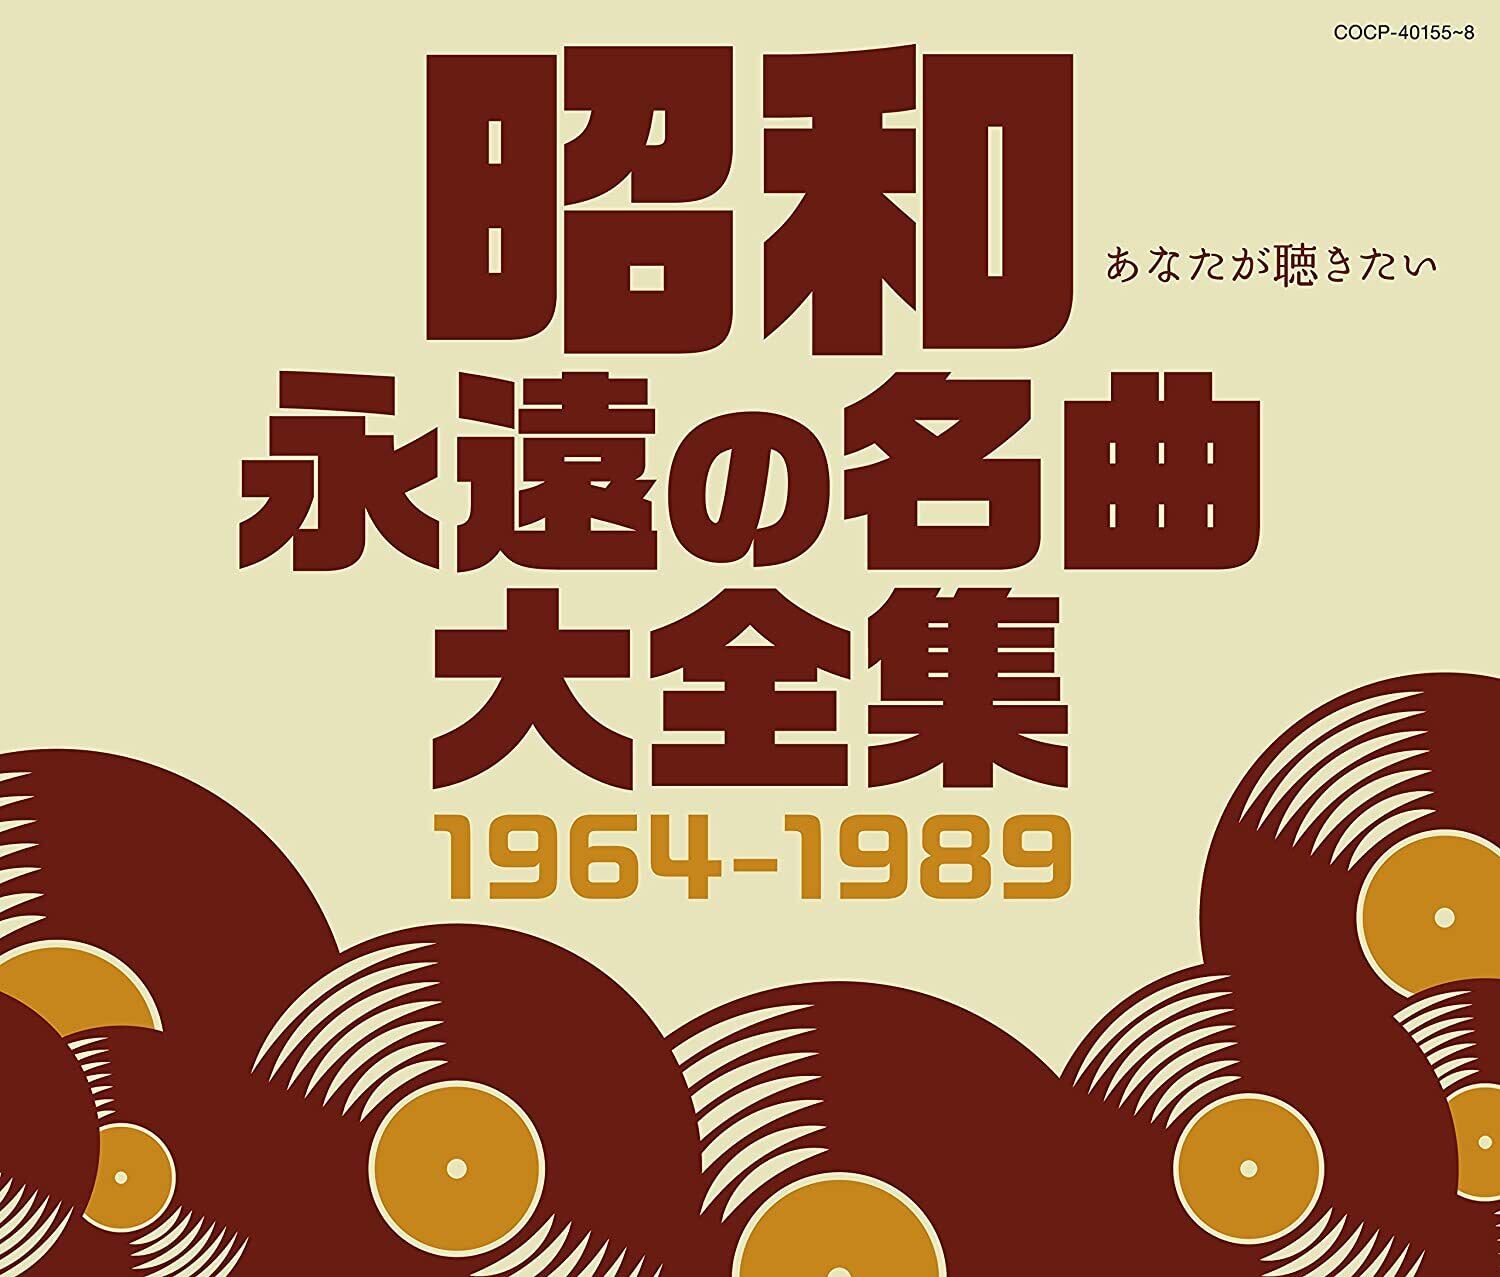 昭和 永遠の名曲大全集 1964~1989』オムニバス e-shop Gobangai